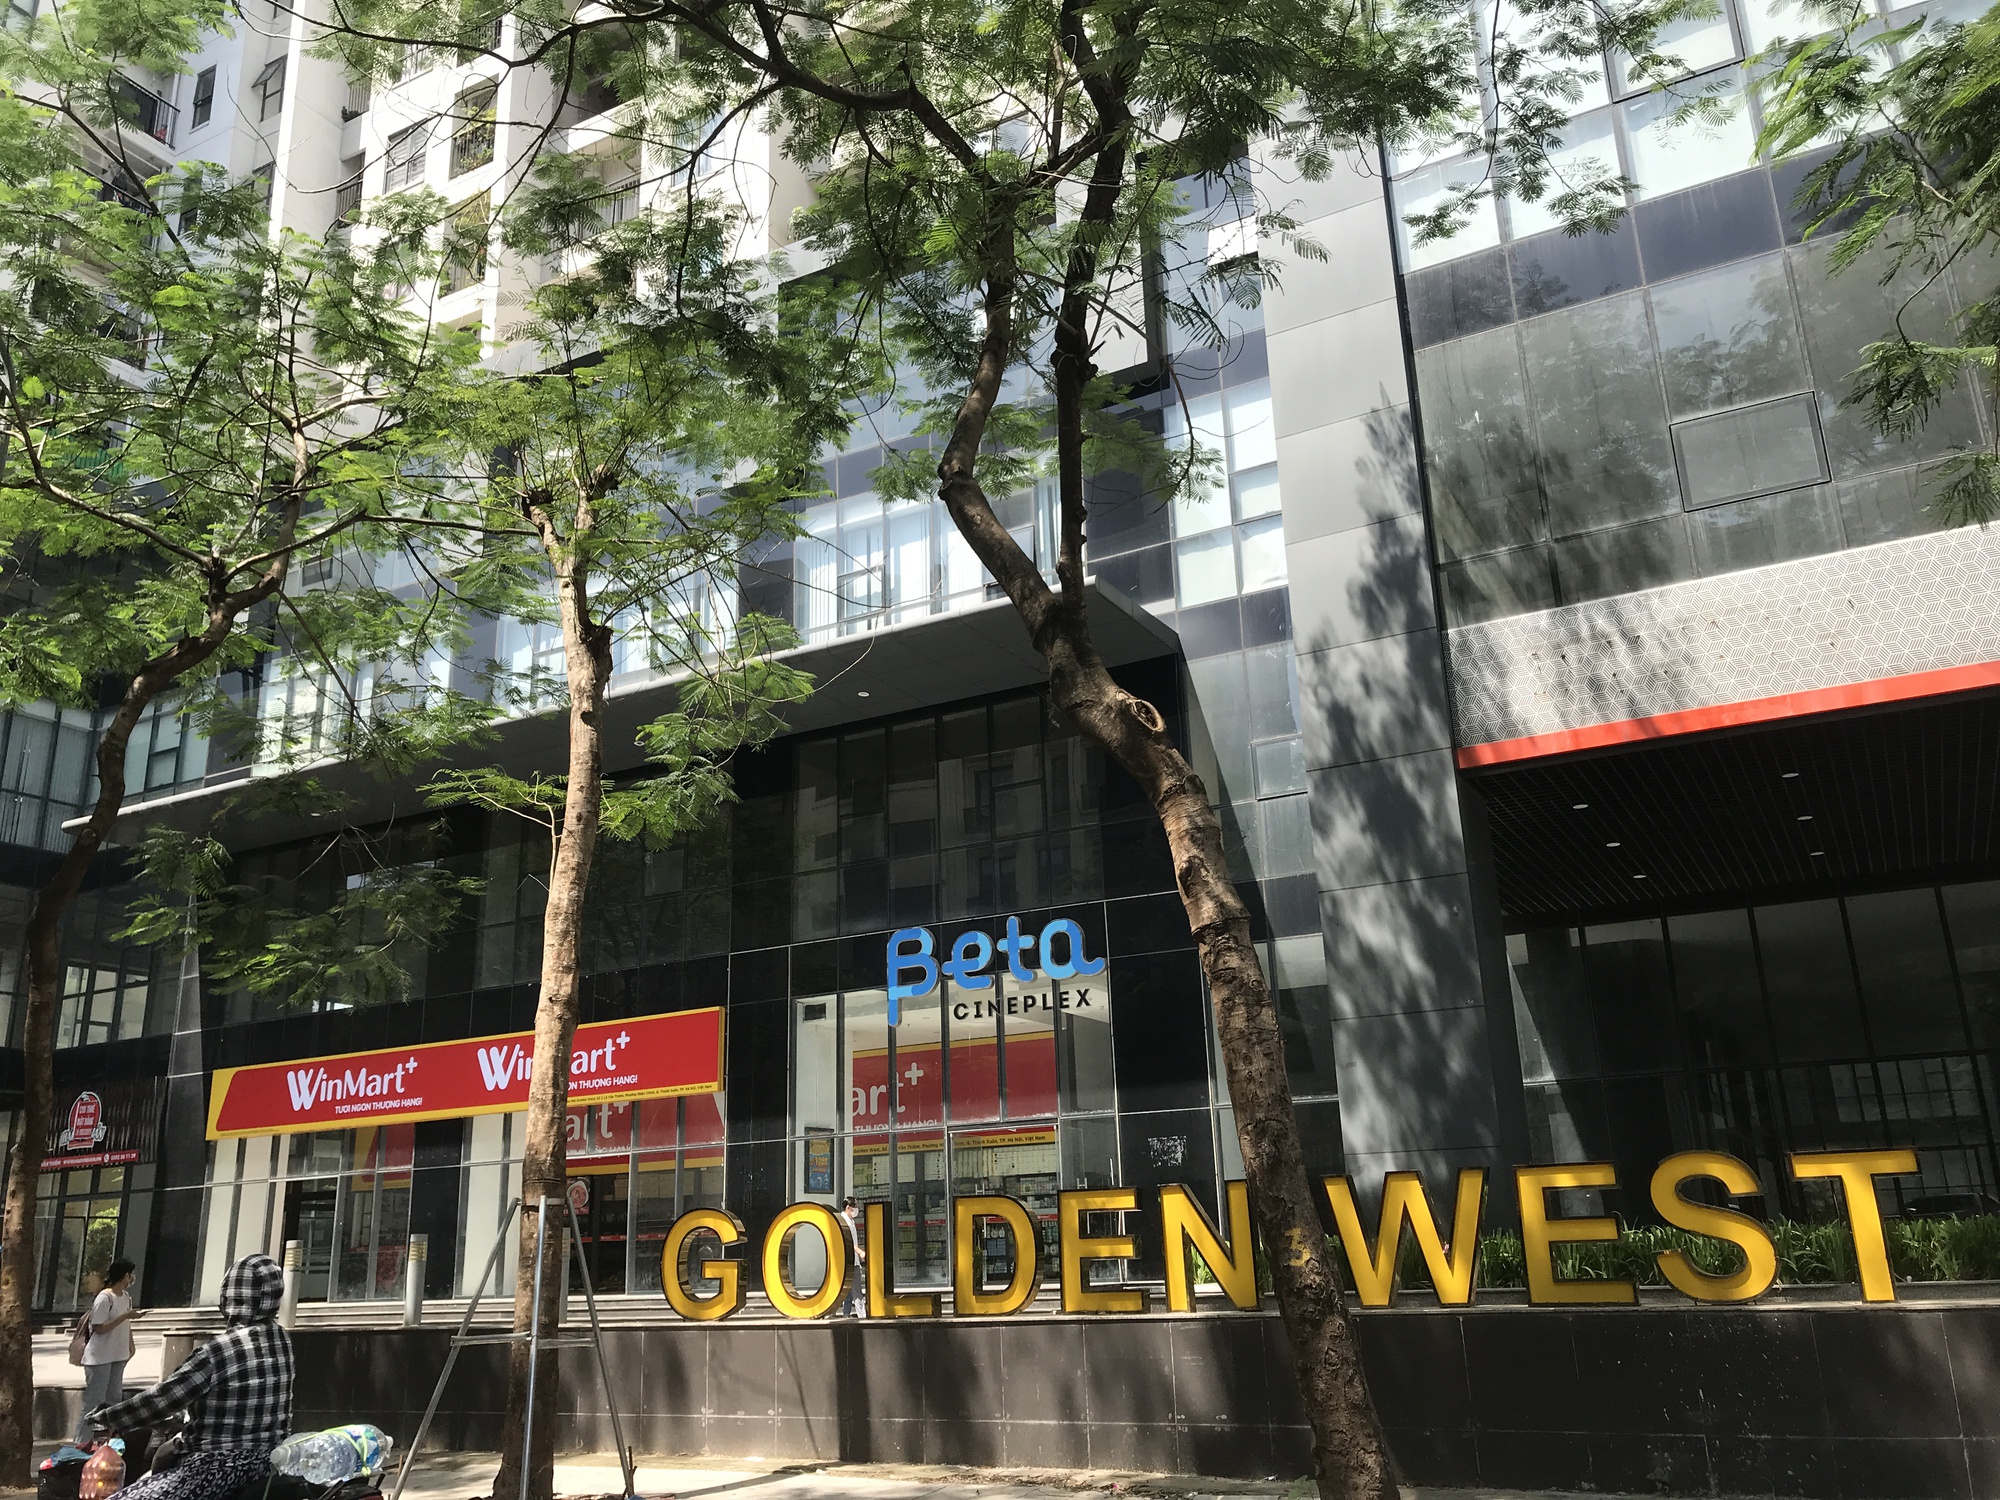 Chung cư Golden West điều chỉnh quy hoạch sai quy định pháp luật tăng tầng cao từ 6,5 lên 25 tầng (Ảnh: TN)